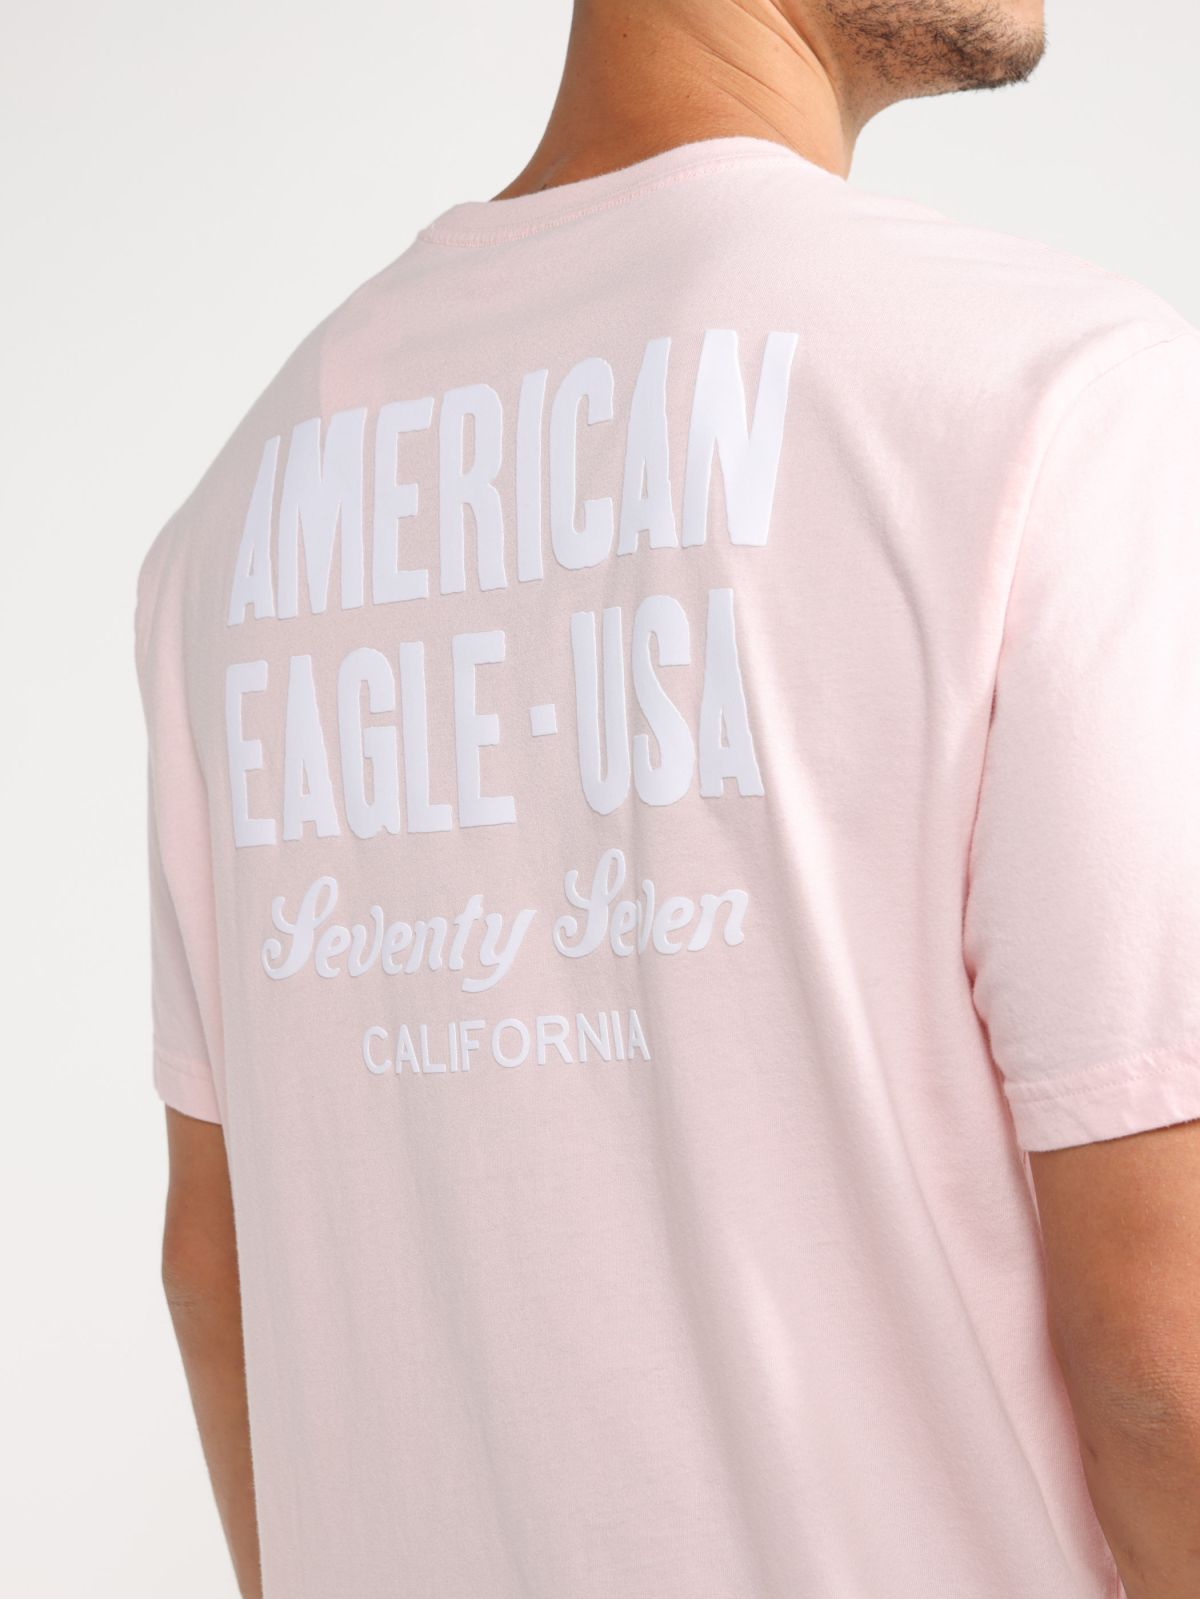  טי שירט עם לוגו של AMERICAN EAGLE